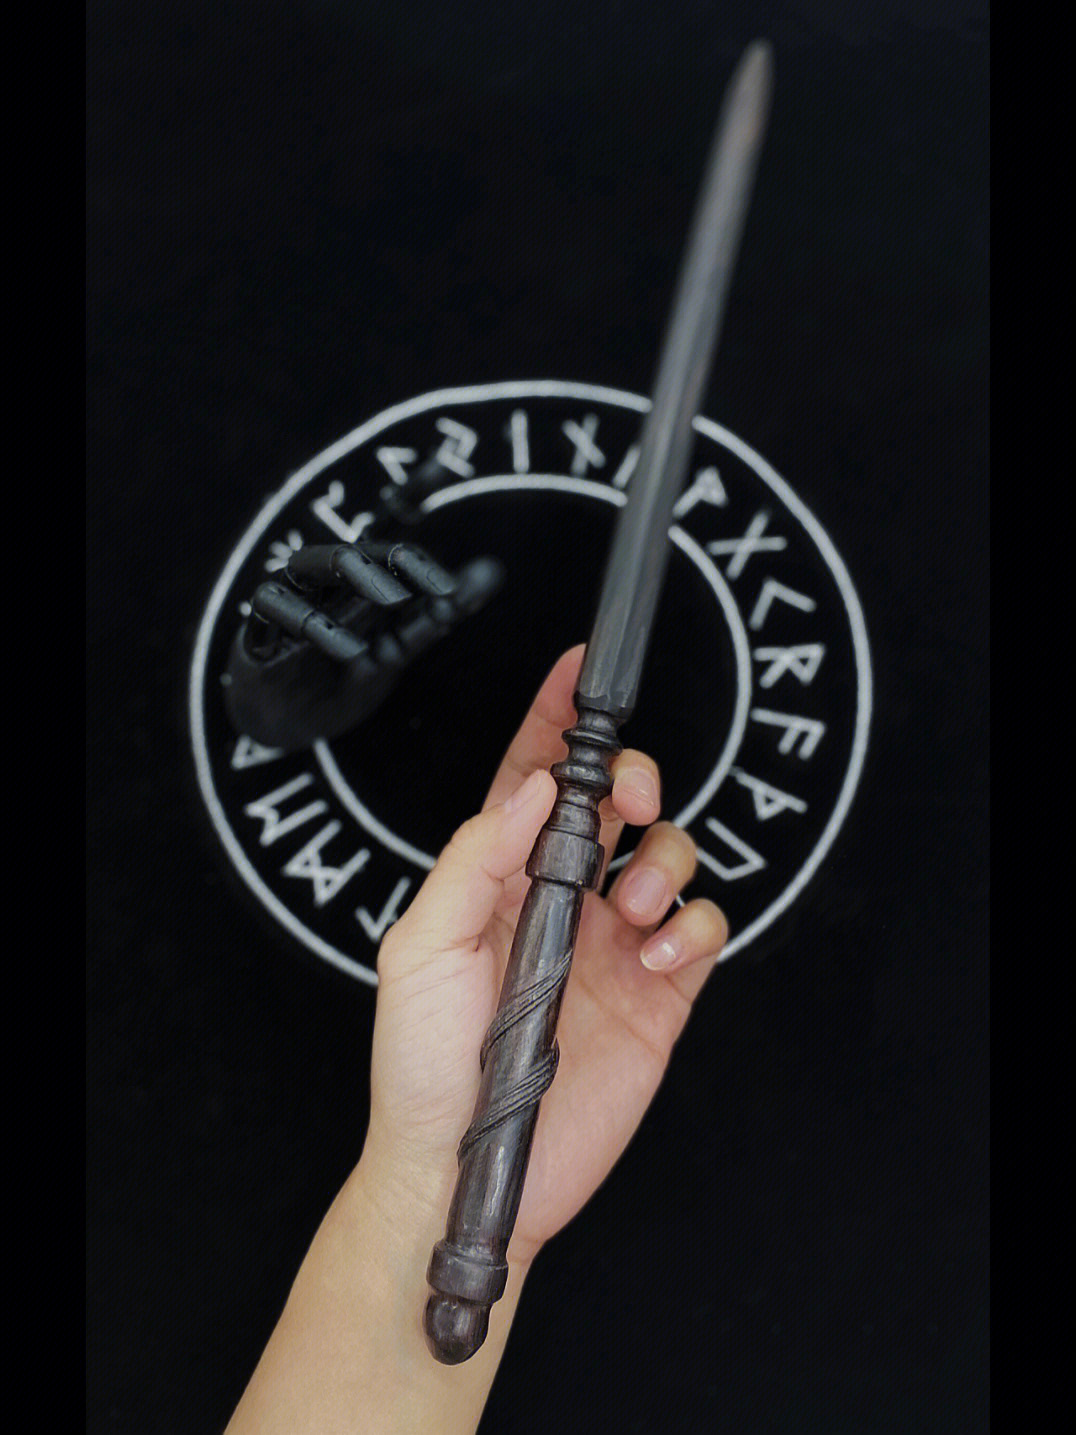 魔杖材质:黑檀木杖长:39厘米定制要求:魔杖整体结构类似古剑,杖柄纹路